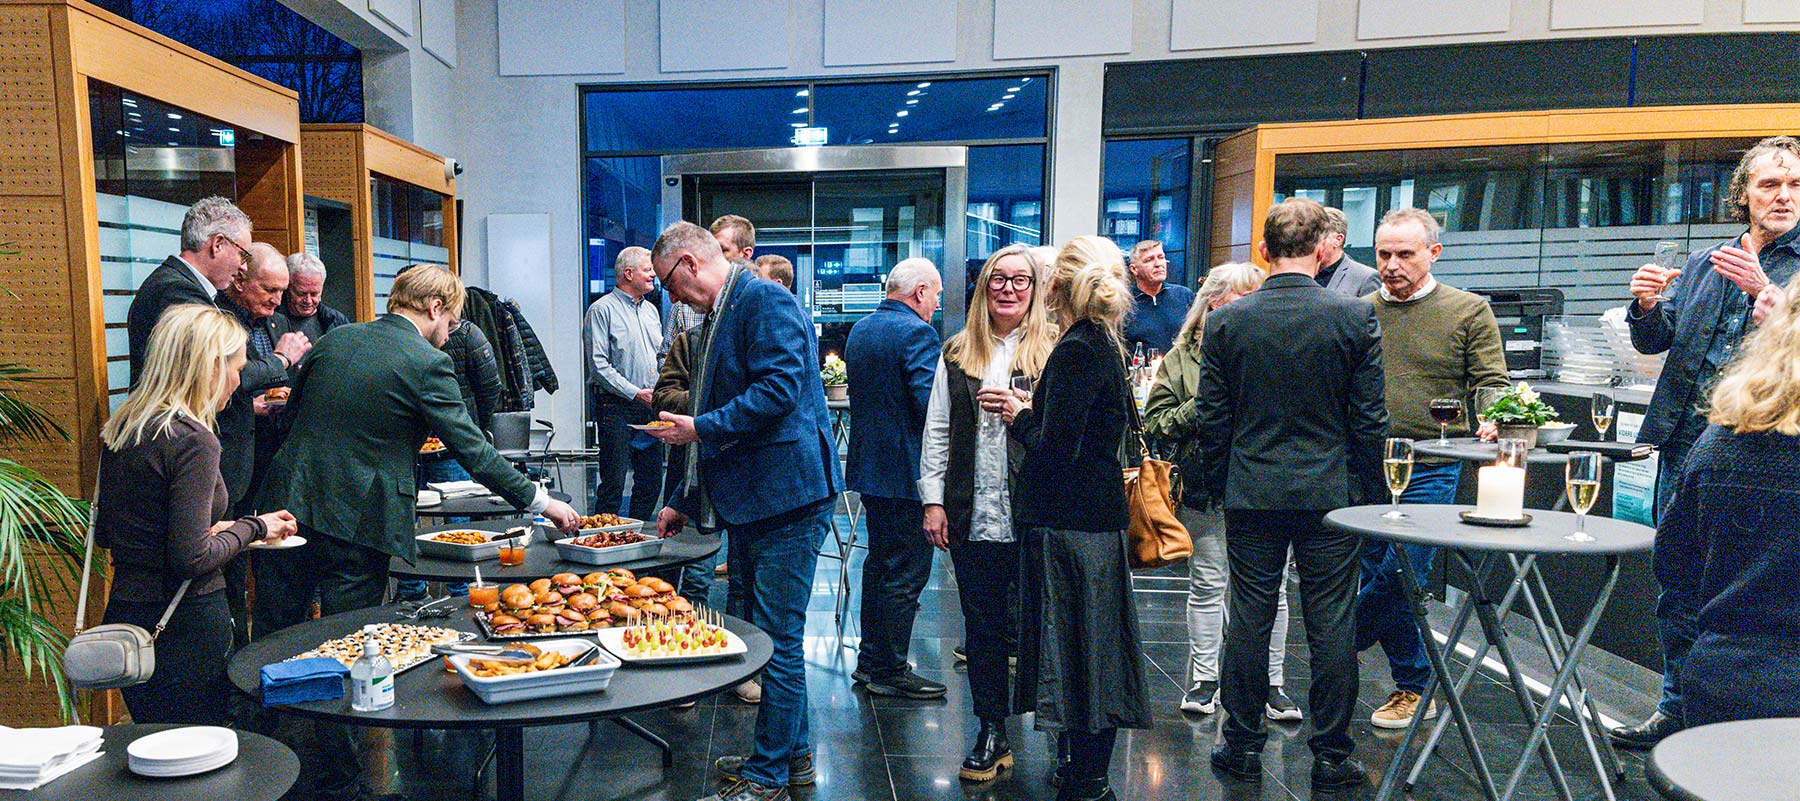 Omkring 40 personer deltager i Dragør Erhvervs og kommunens fælles nytårskur for erhvervslivet. Foto: TorbenStender.